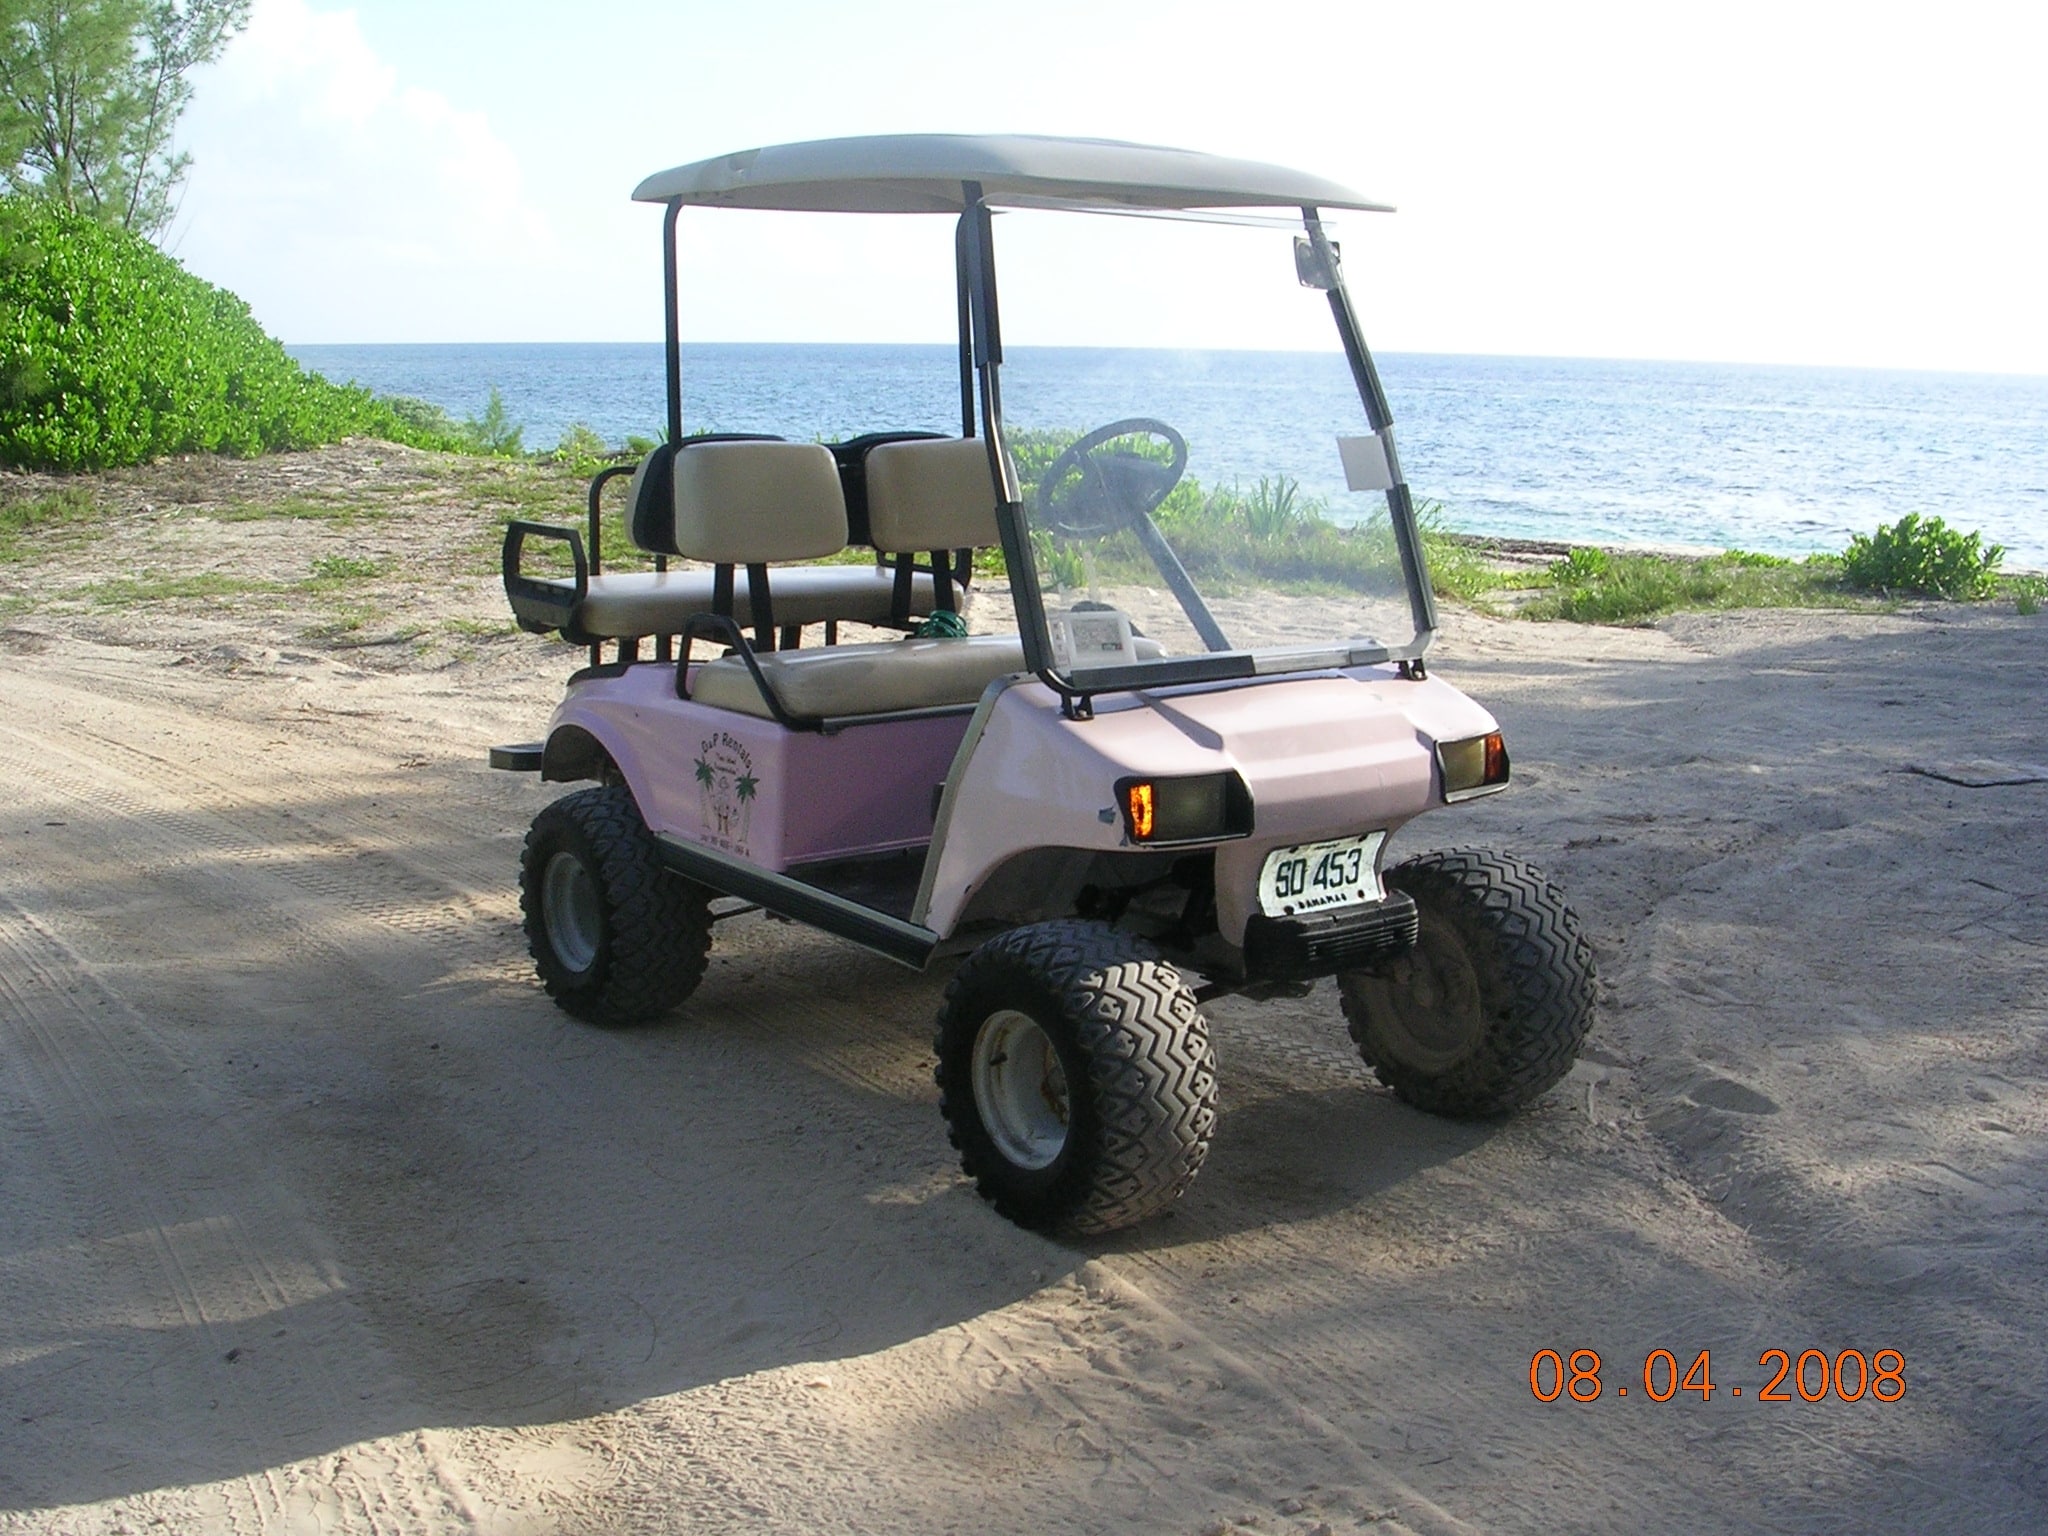 Island golf cart